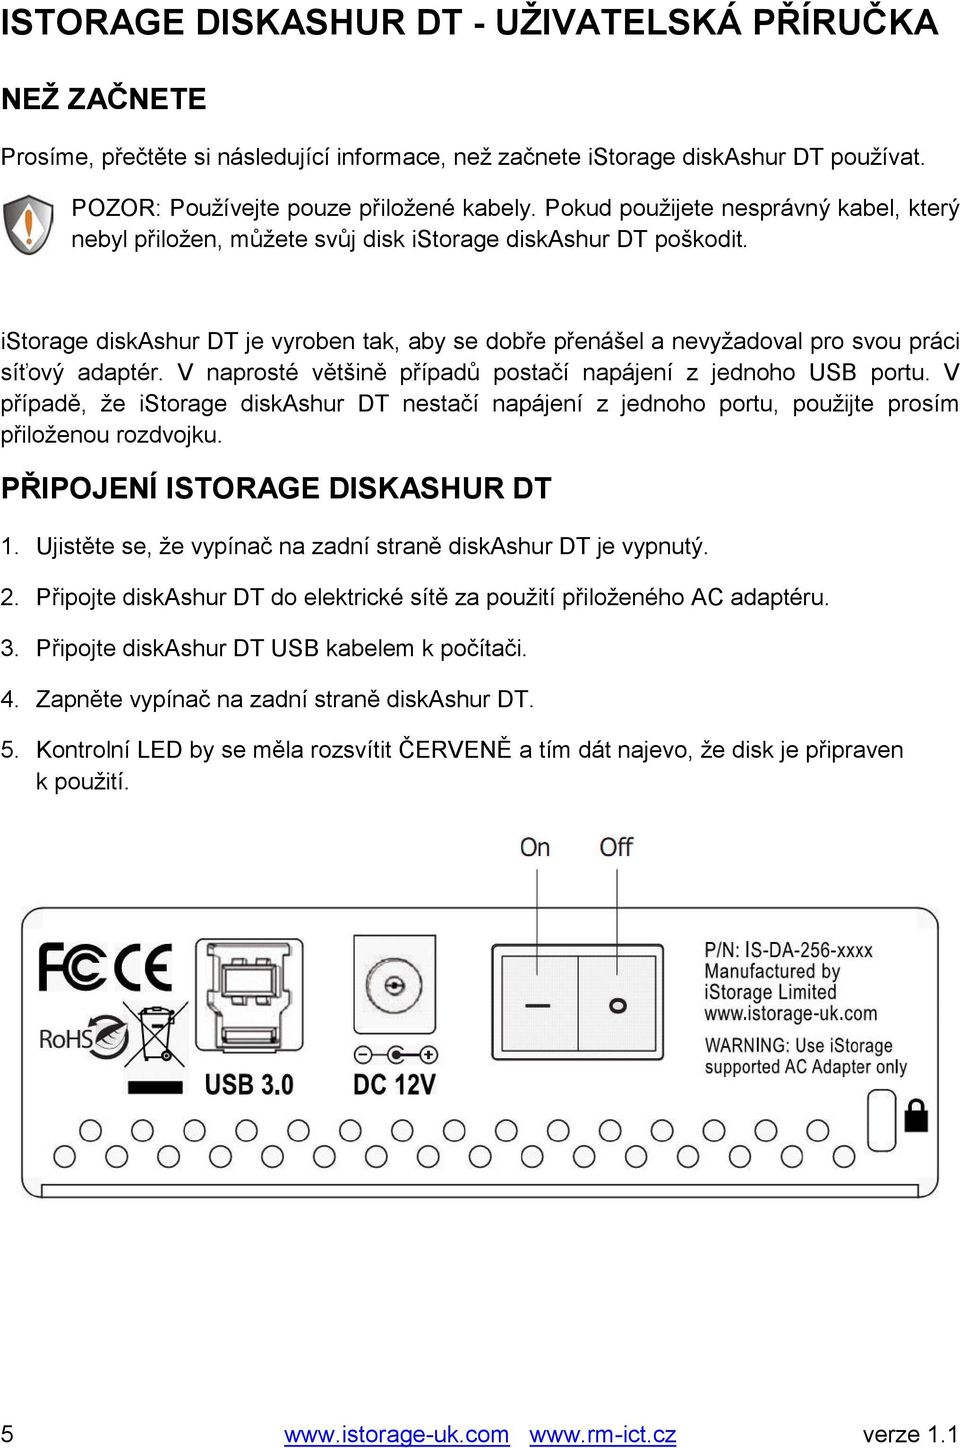 istorage diskashur DT je vyroben tak, aby se dobře přenášel a nevyžadoval pro svou práci síťový adaptér. V naprosté většině případů postačí napájení z jednoho USB portu.